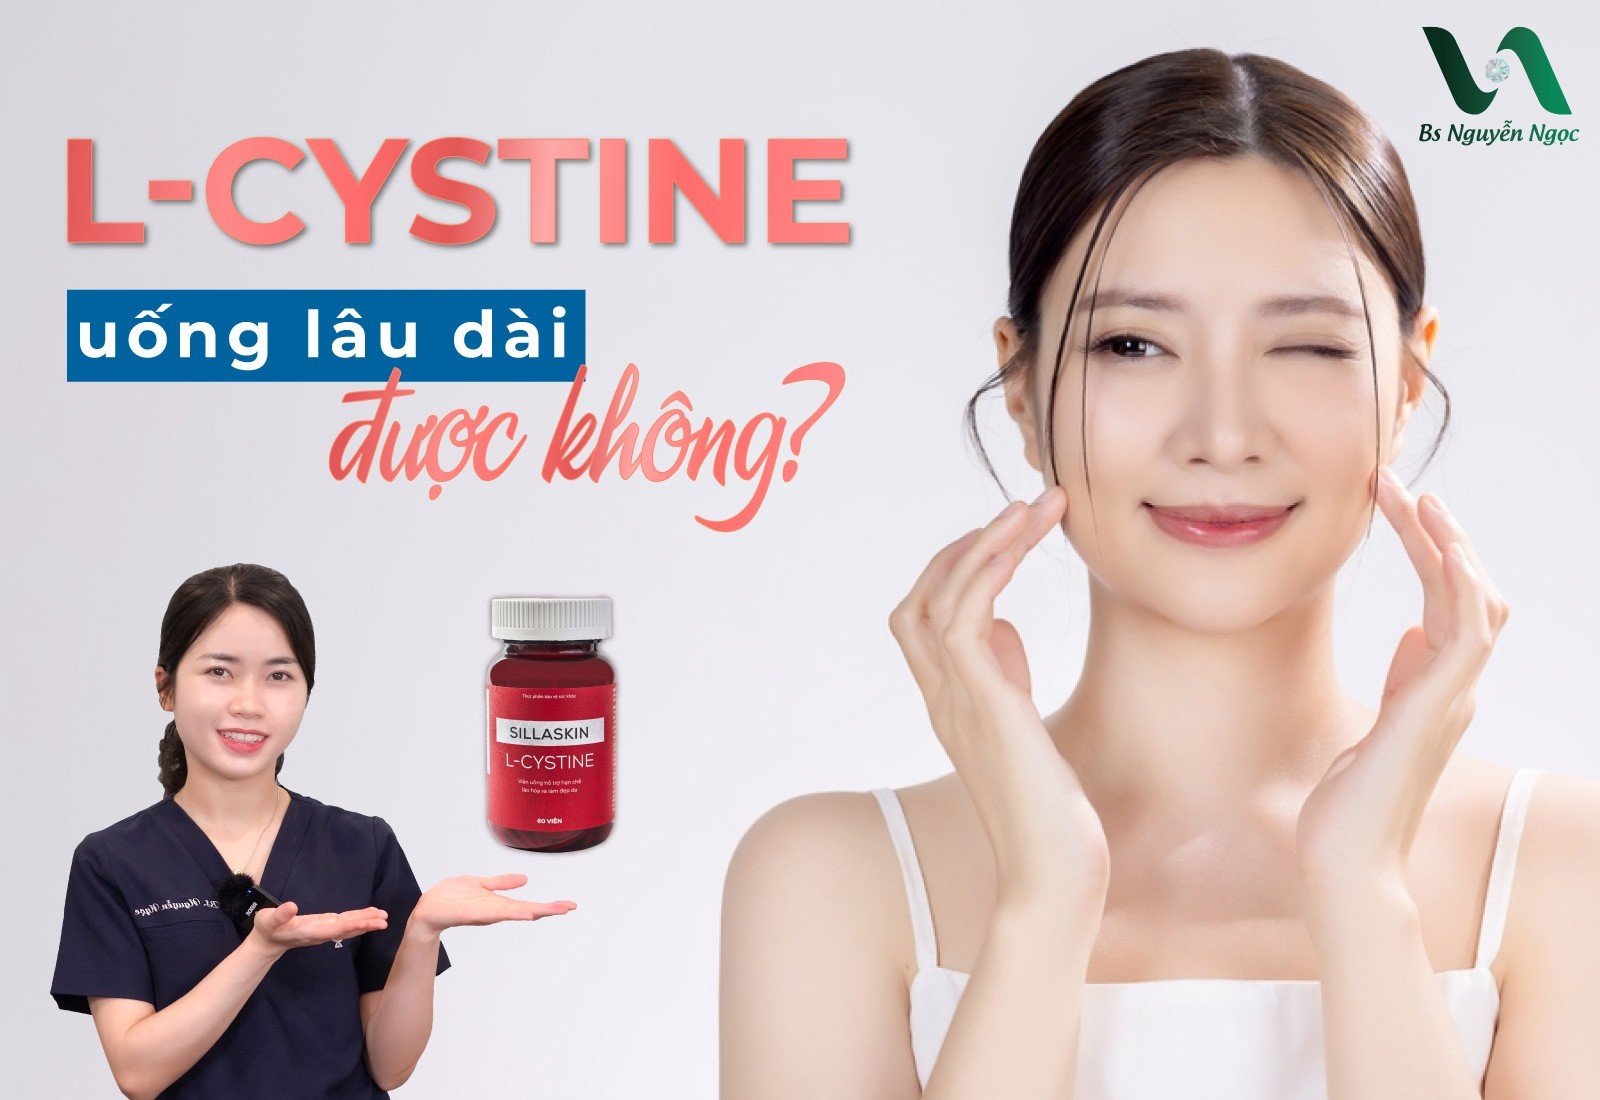 L-cystine uống lâu dài được không?